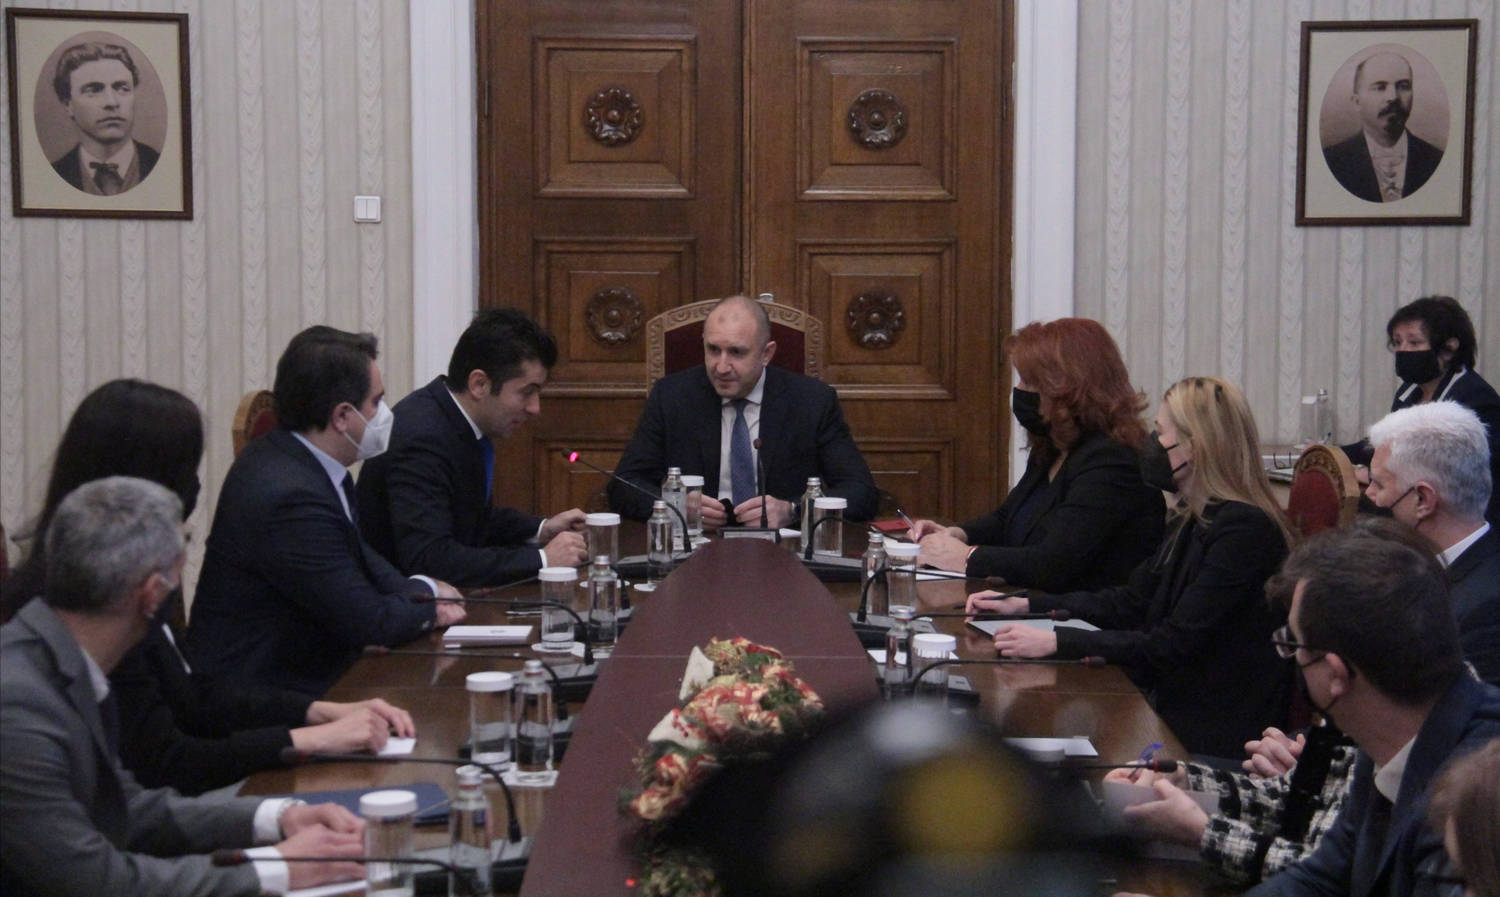 Времето на едноличната премиерска власт приключи заяви президентът Румен Радев